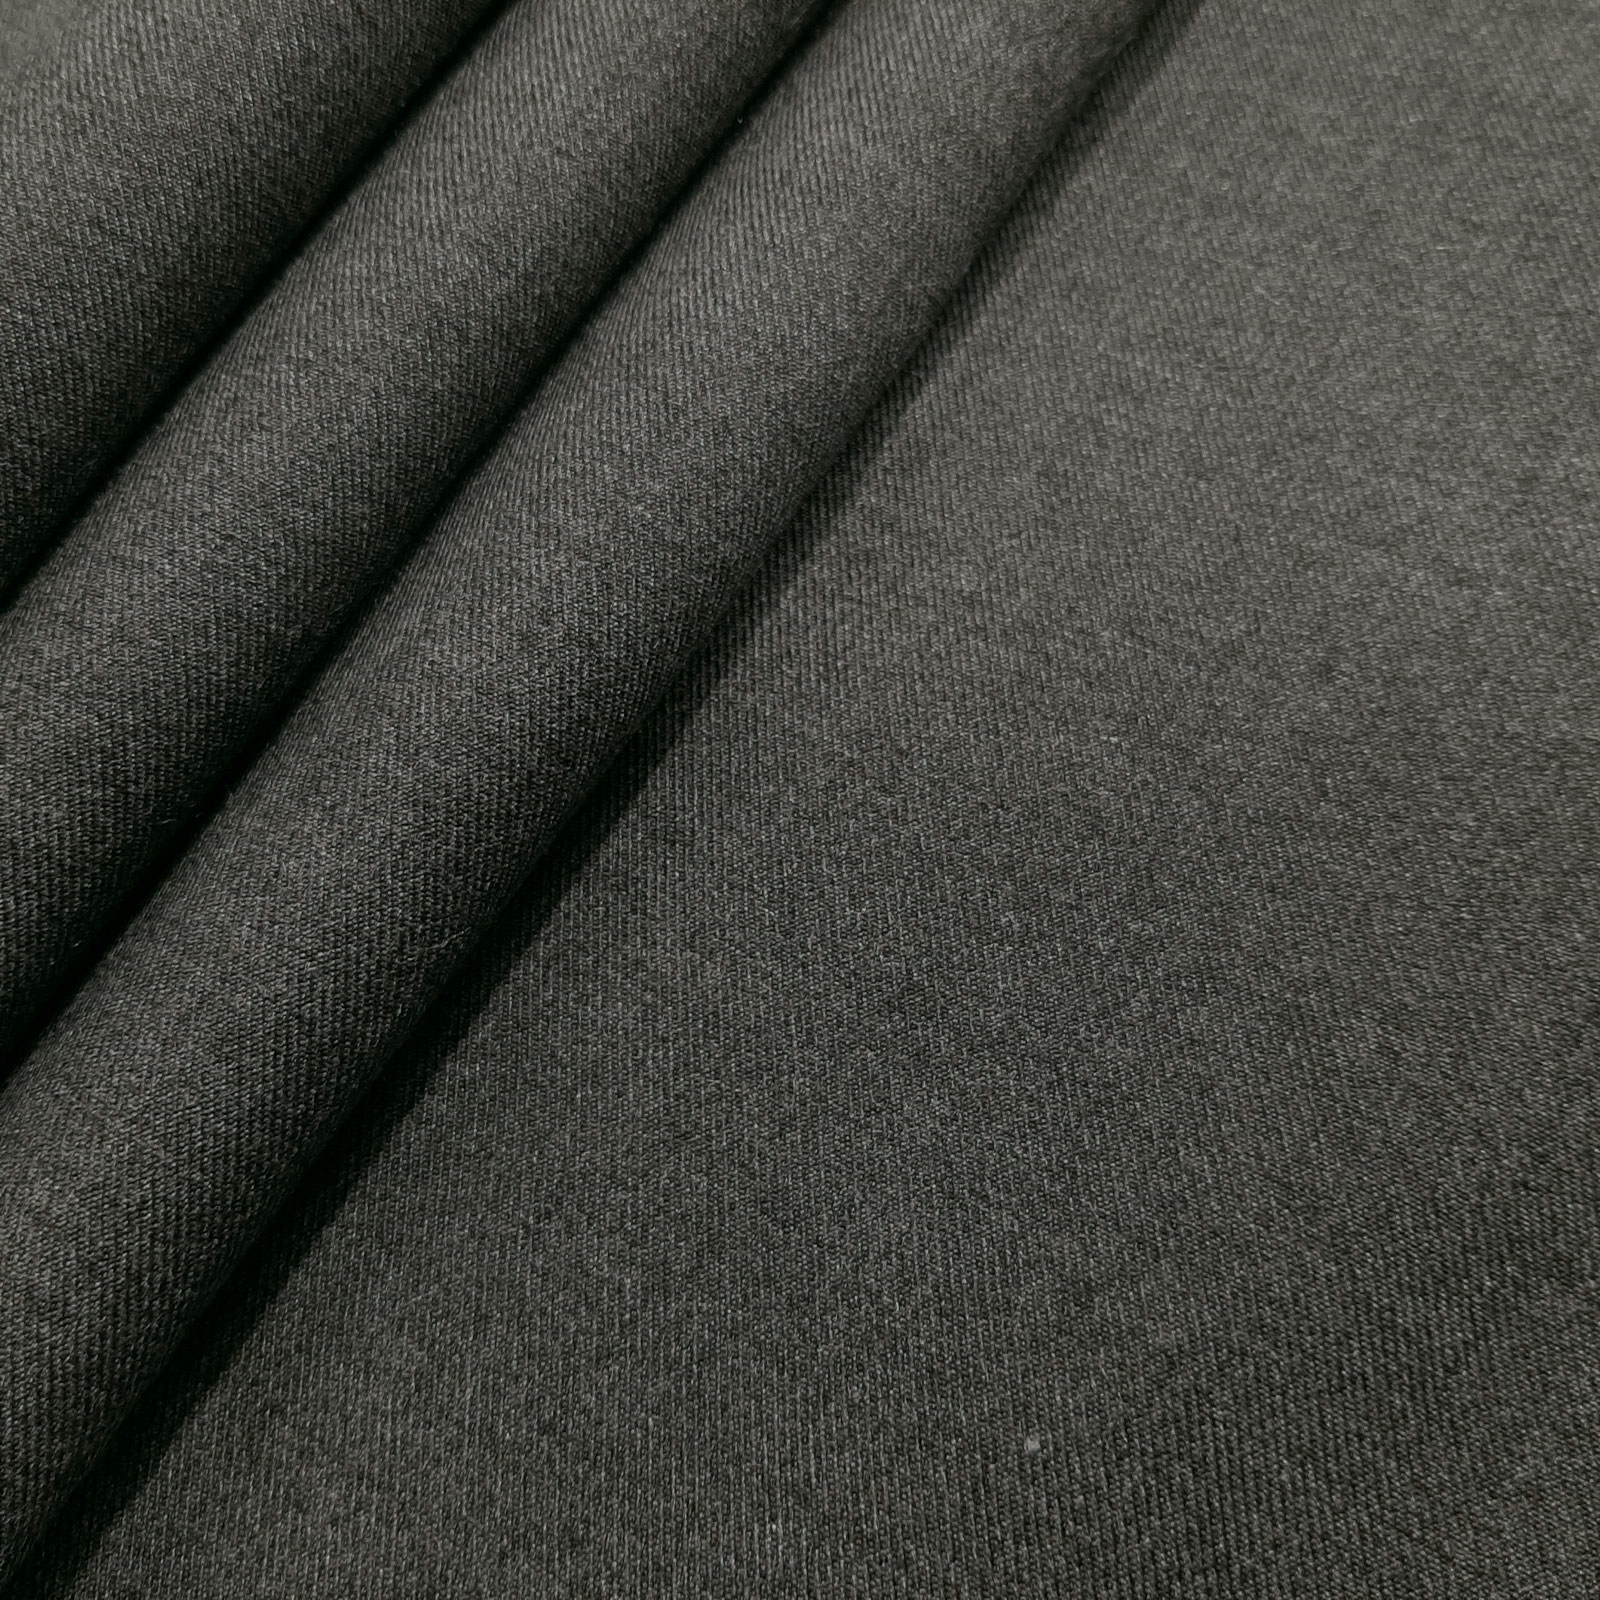 Zafer - Tejido de lana aramida para tapicería - ignífugo - Gris oscuro-melange